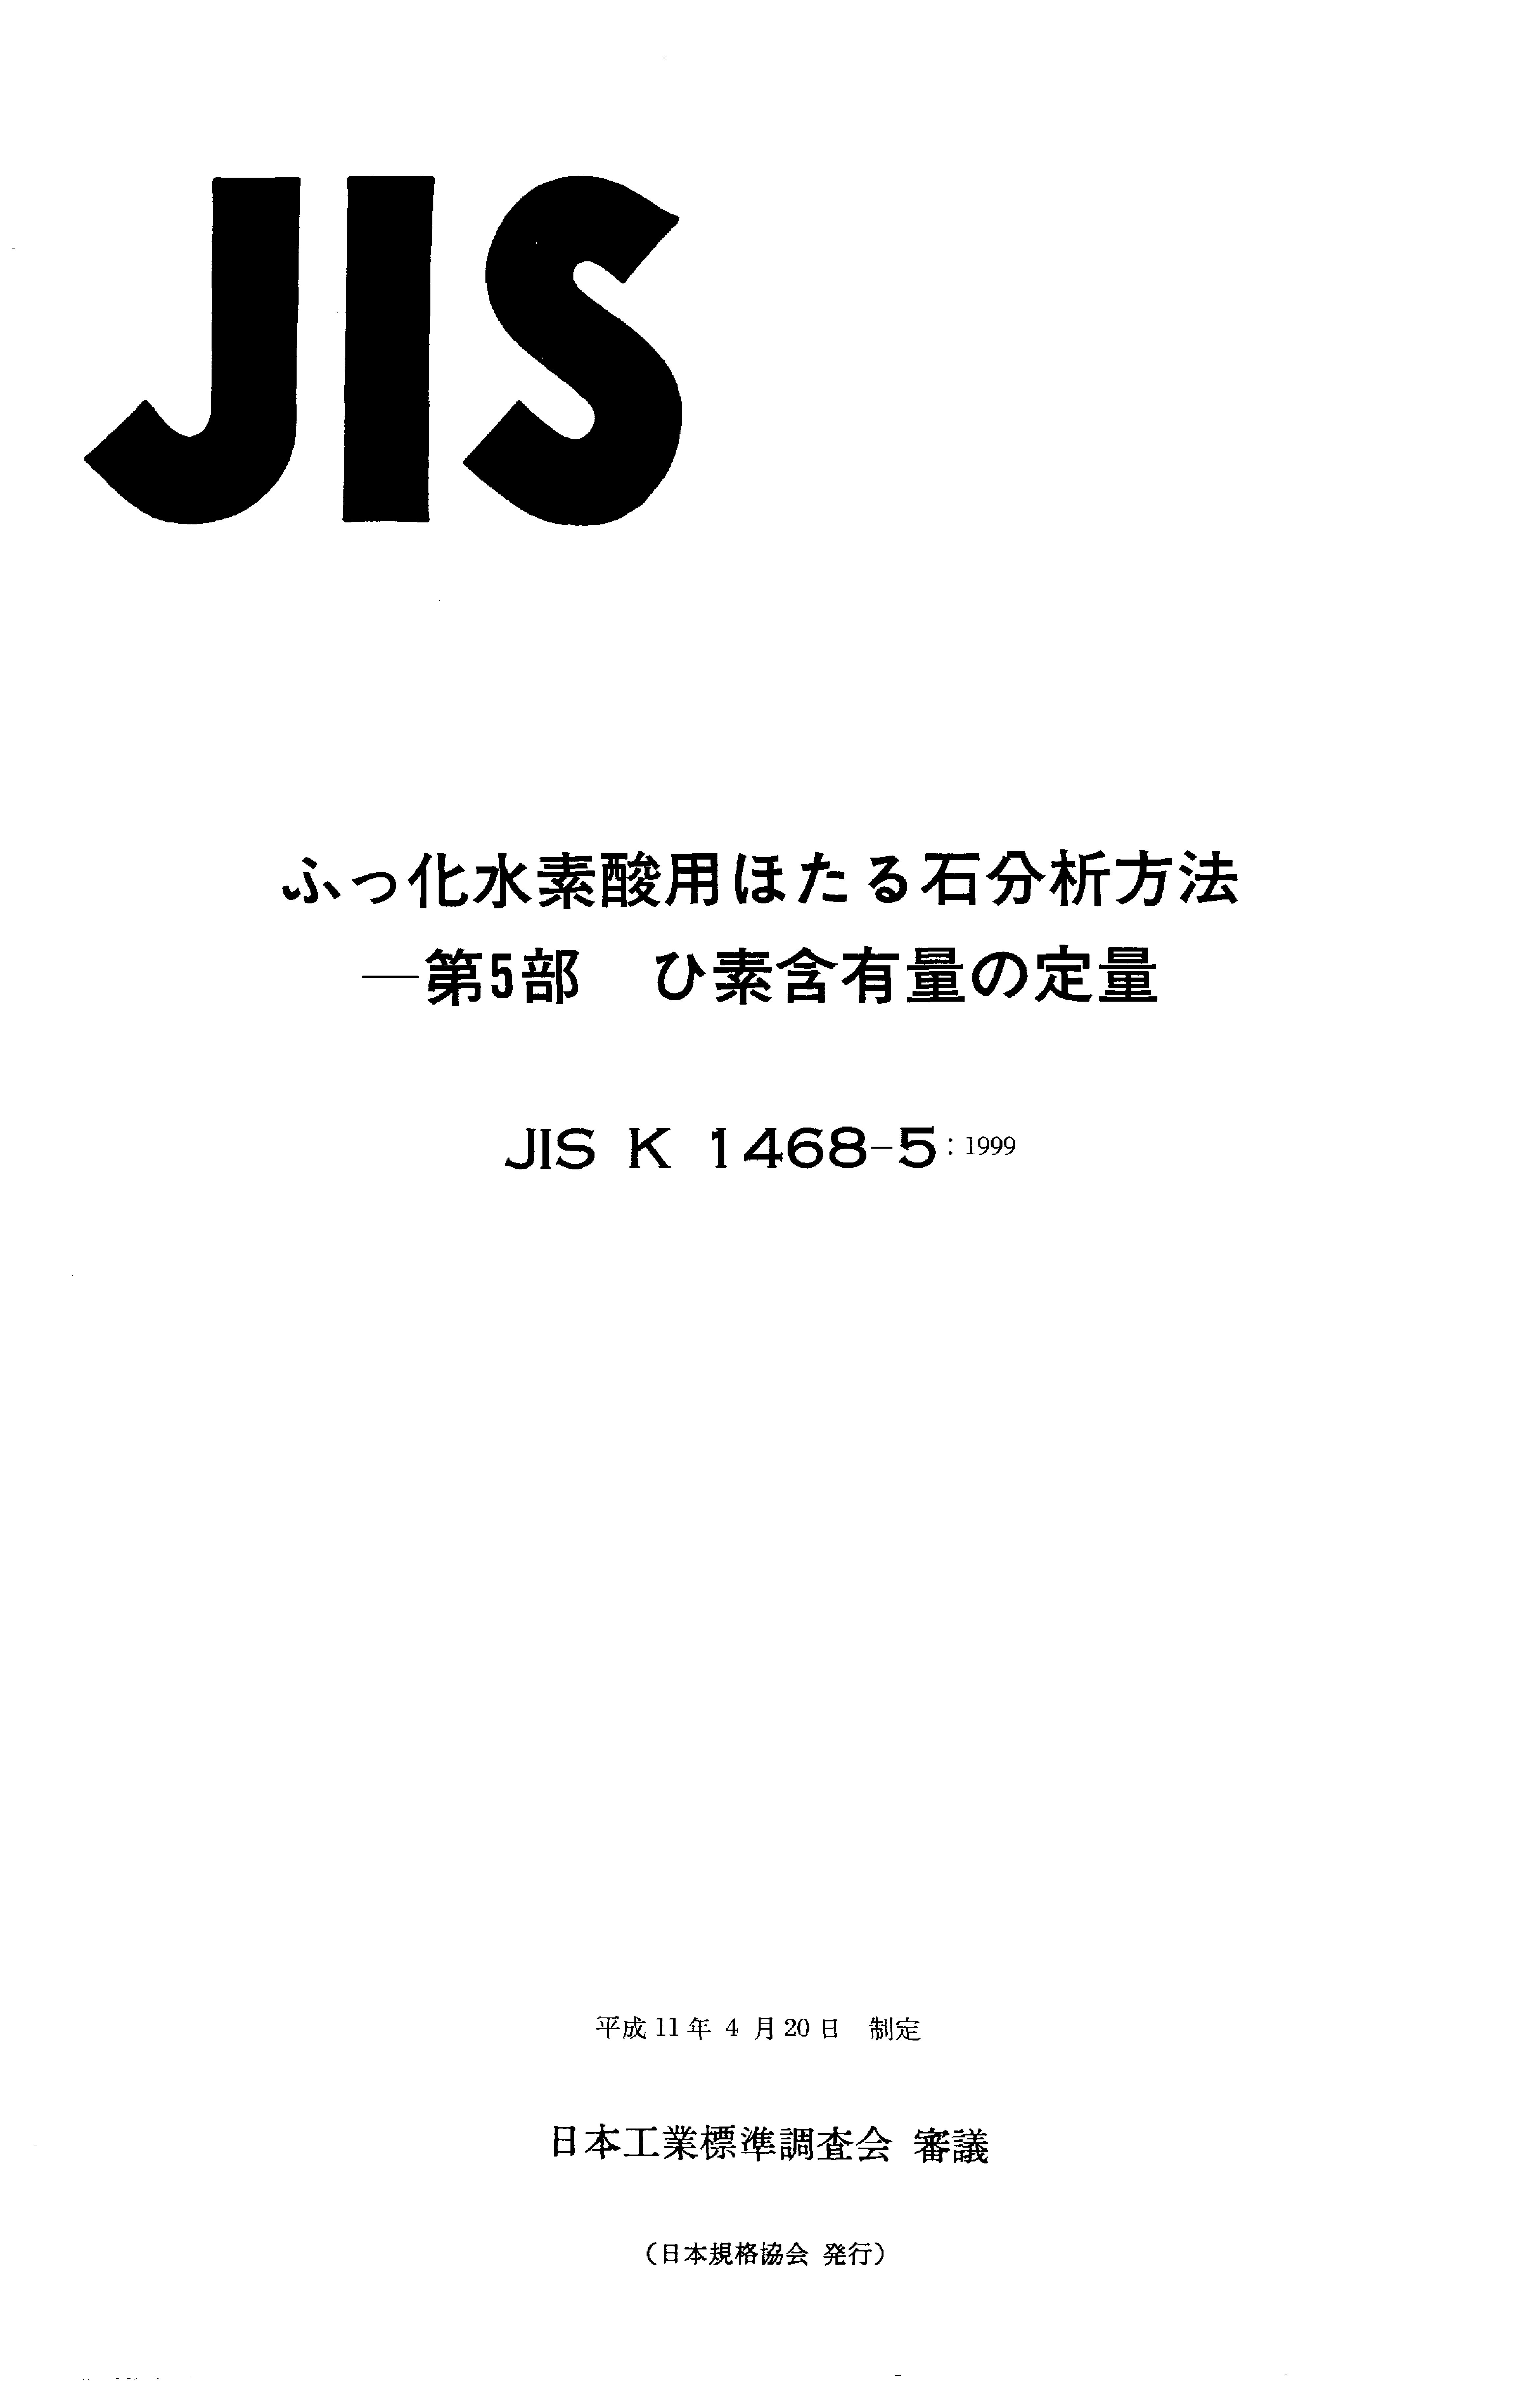 JIS K 1468-5:1999封面图